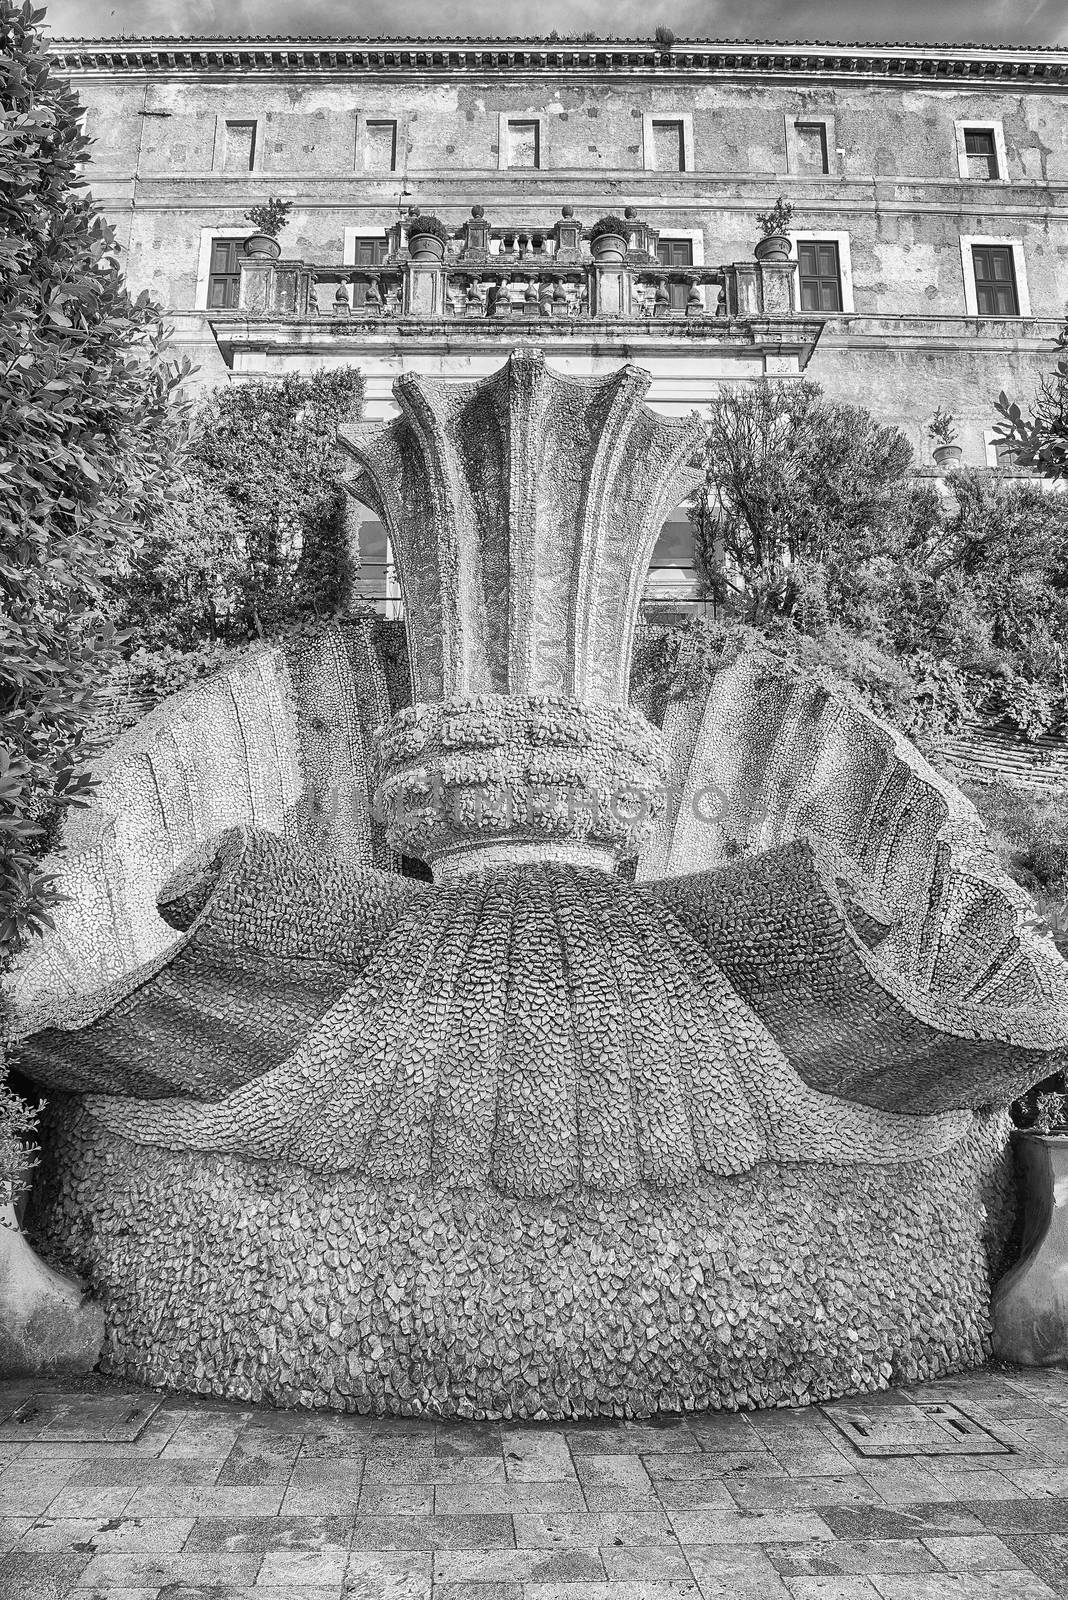 View inside the scenic Villa d'Este, Tivoli, Italy